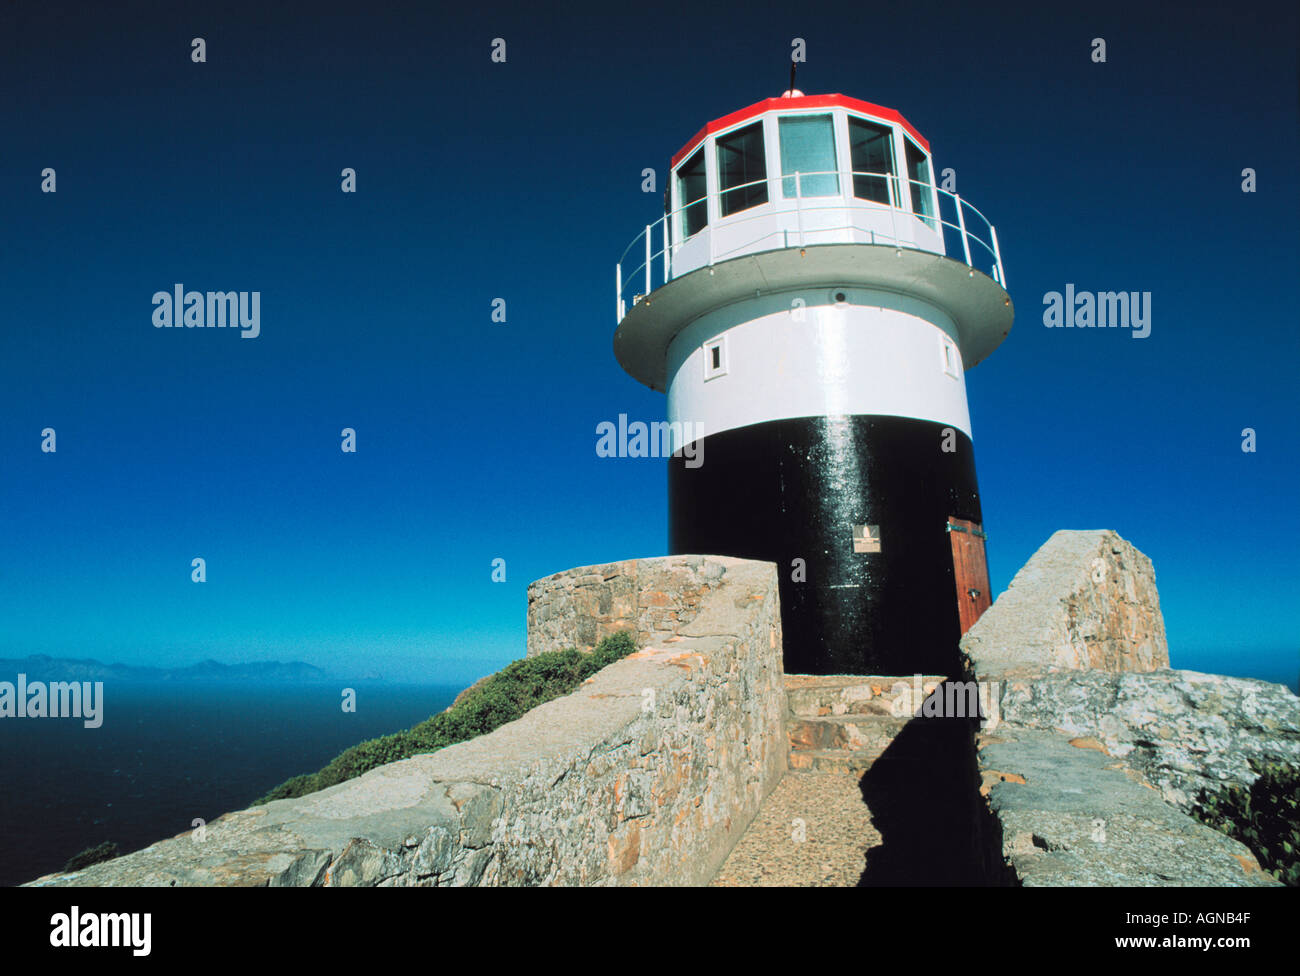 Leuchtturm am Cape Horn Südafrika der südlichste Punkt Afrikas  Stockfotografie - Alamy